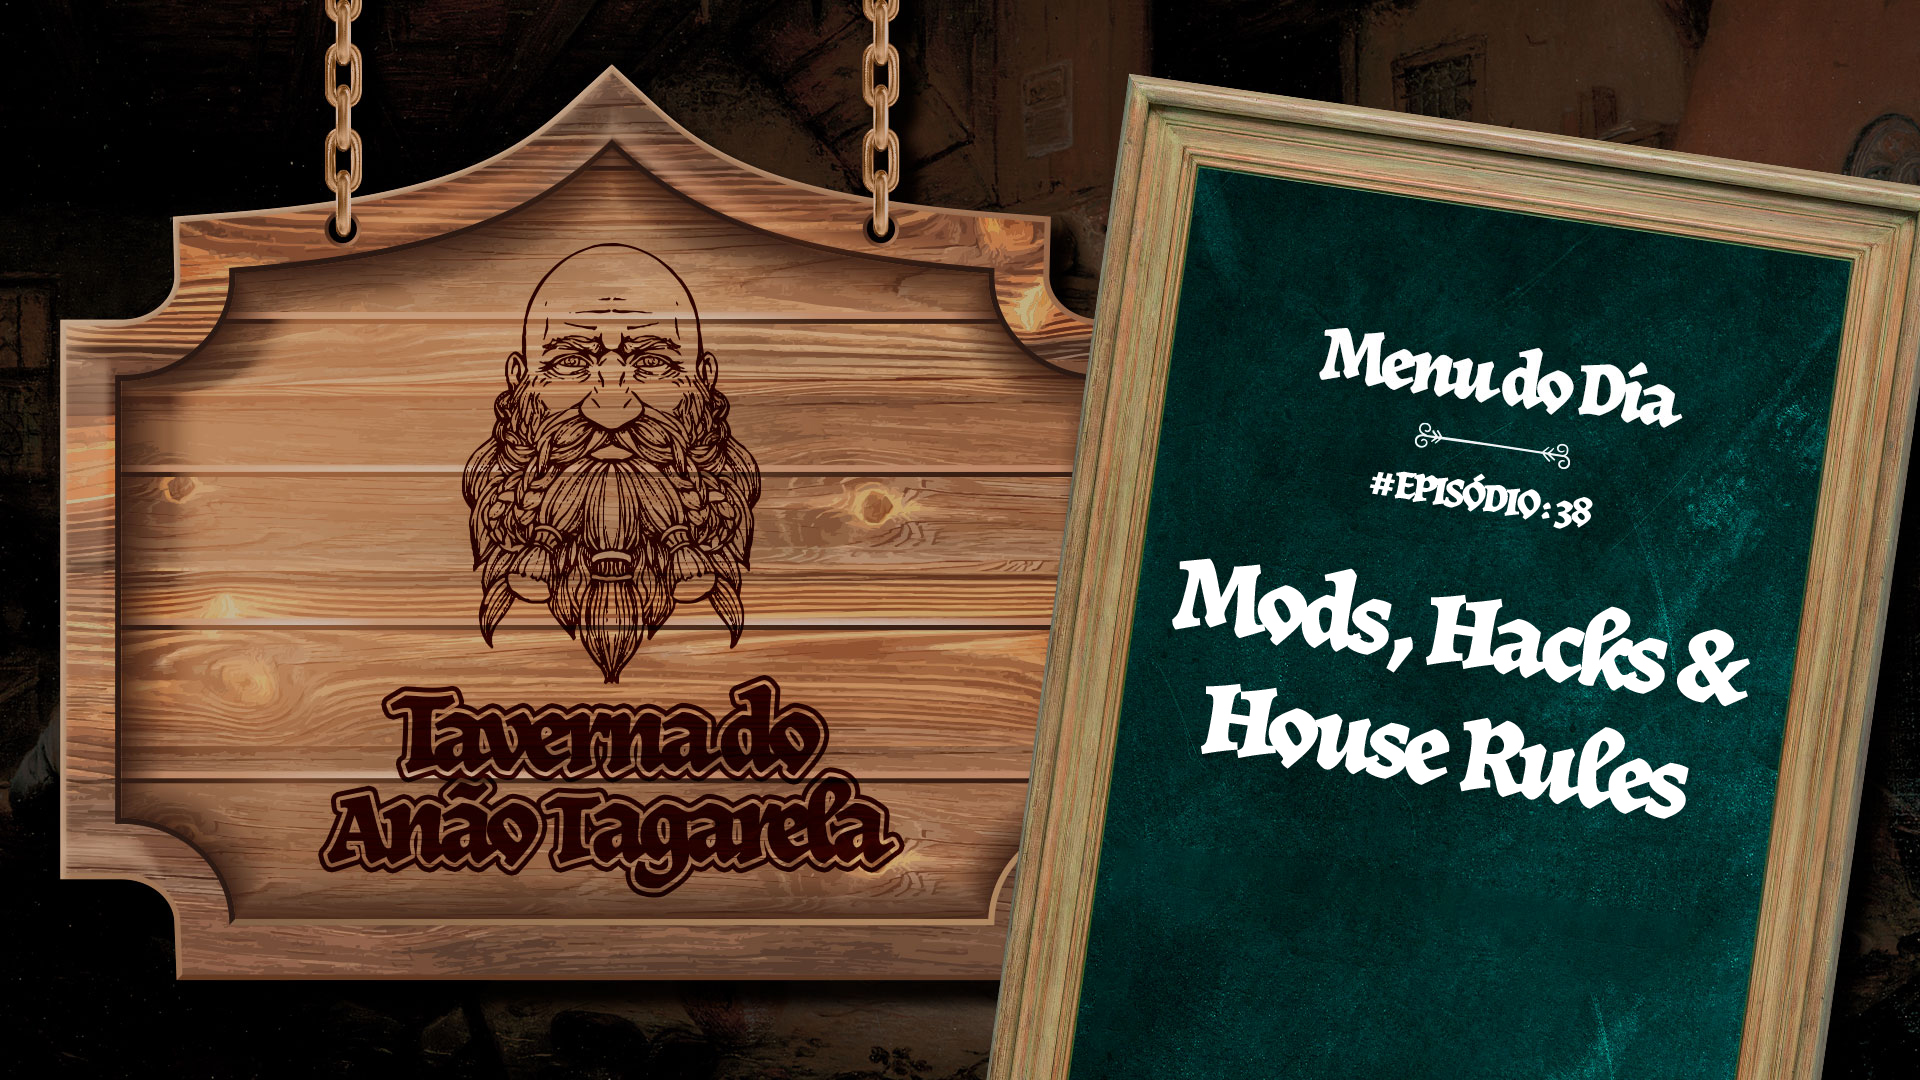 Mods, Hacks & House Rules – Taverna do Anão Tagarela #38